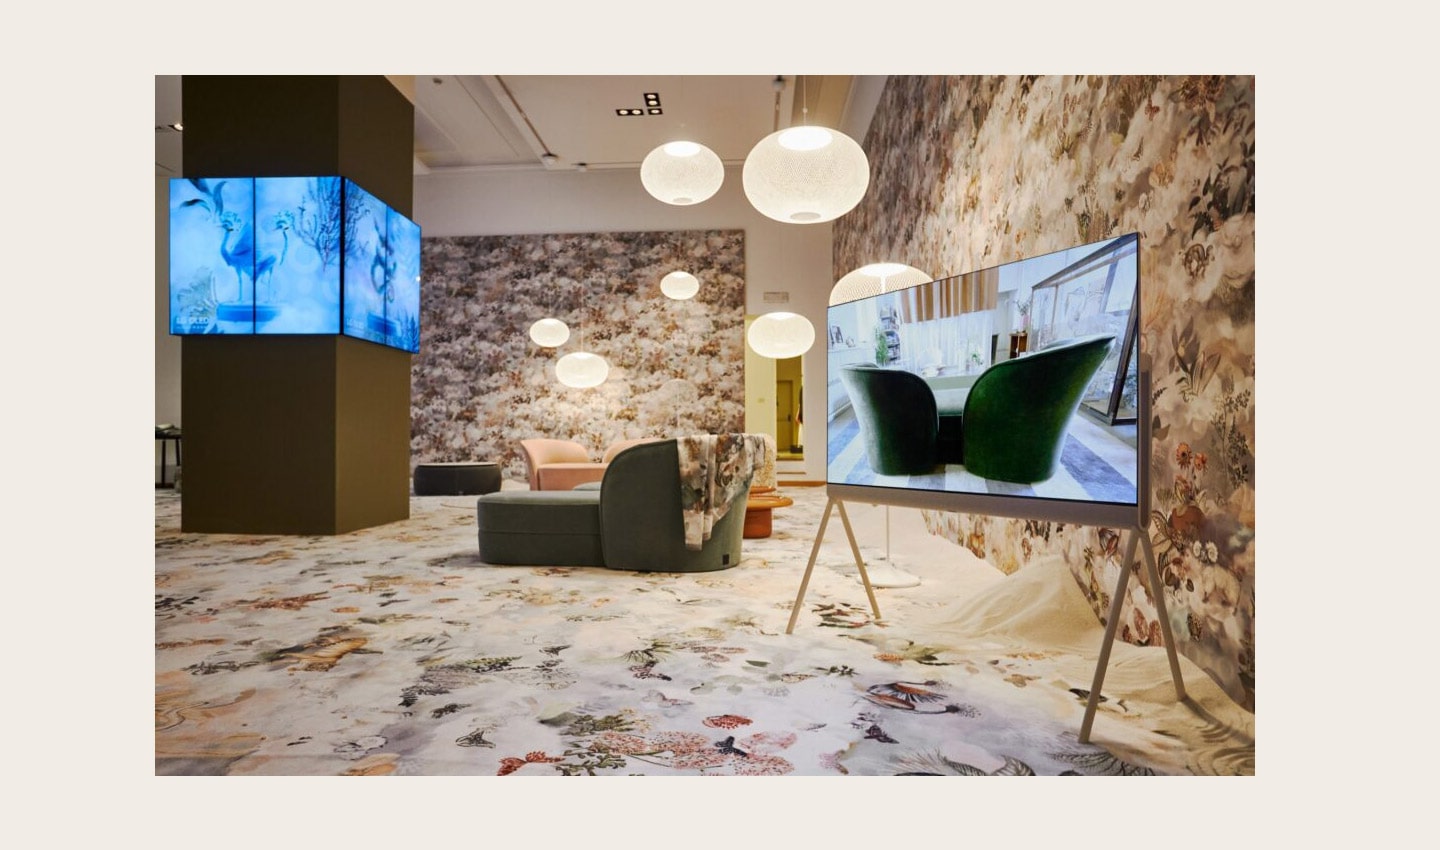  LG OLED Objet Collection, Posé (LX1), displayed at Salone dei Tessuti during Milan Design Week 2022